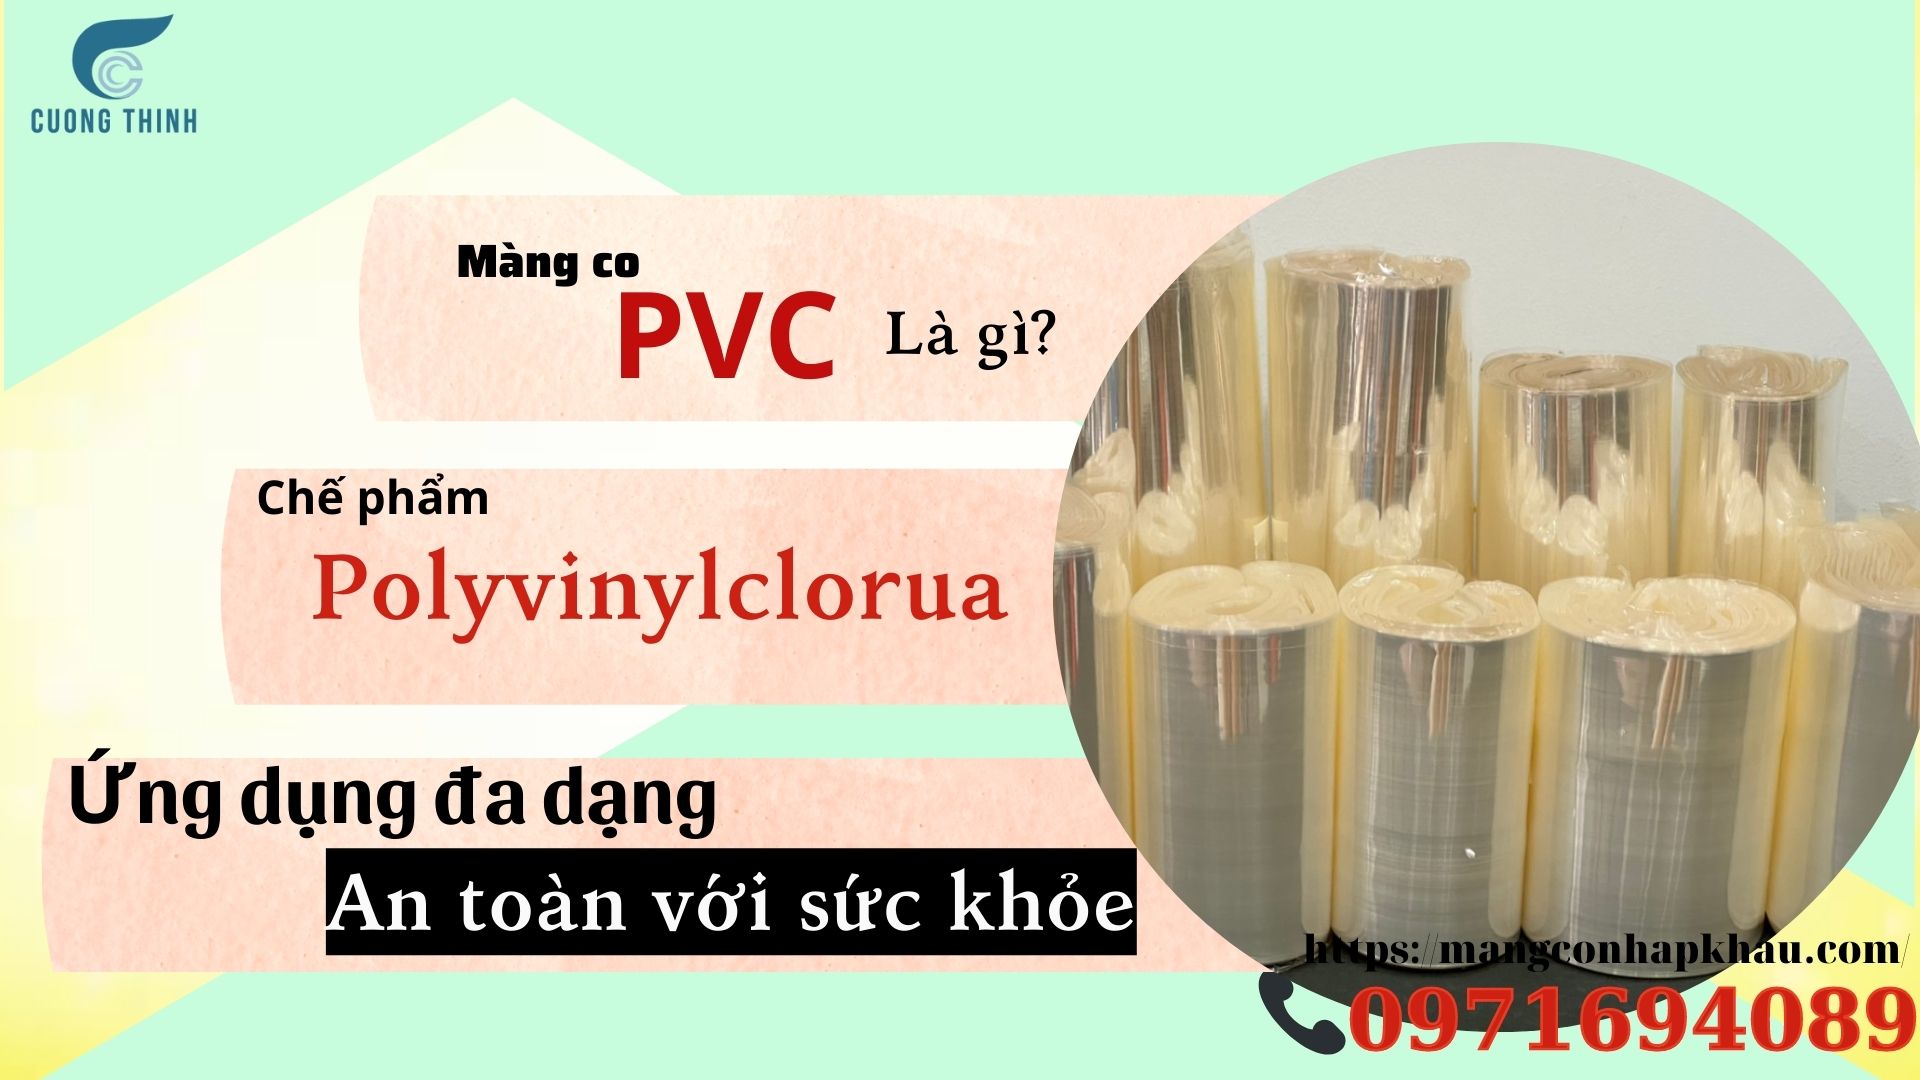 Màng co PVC là gì?